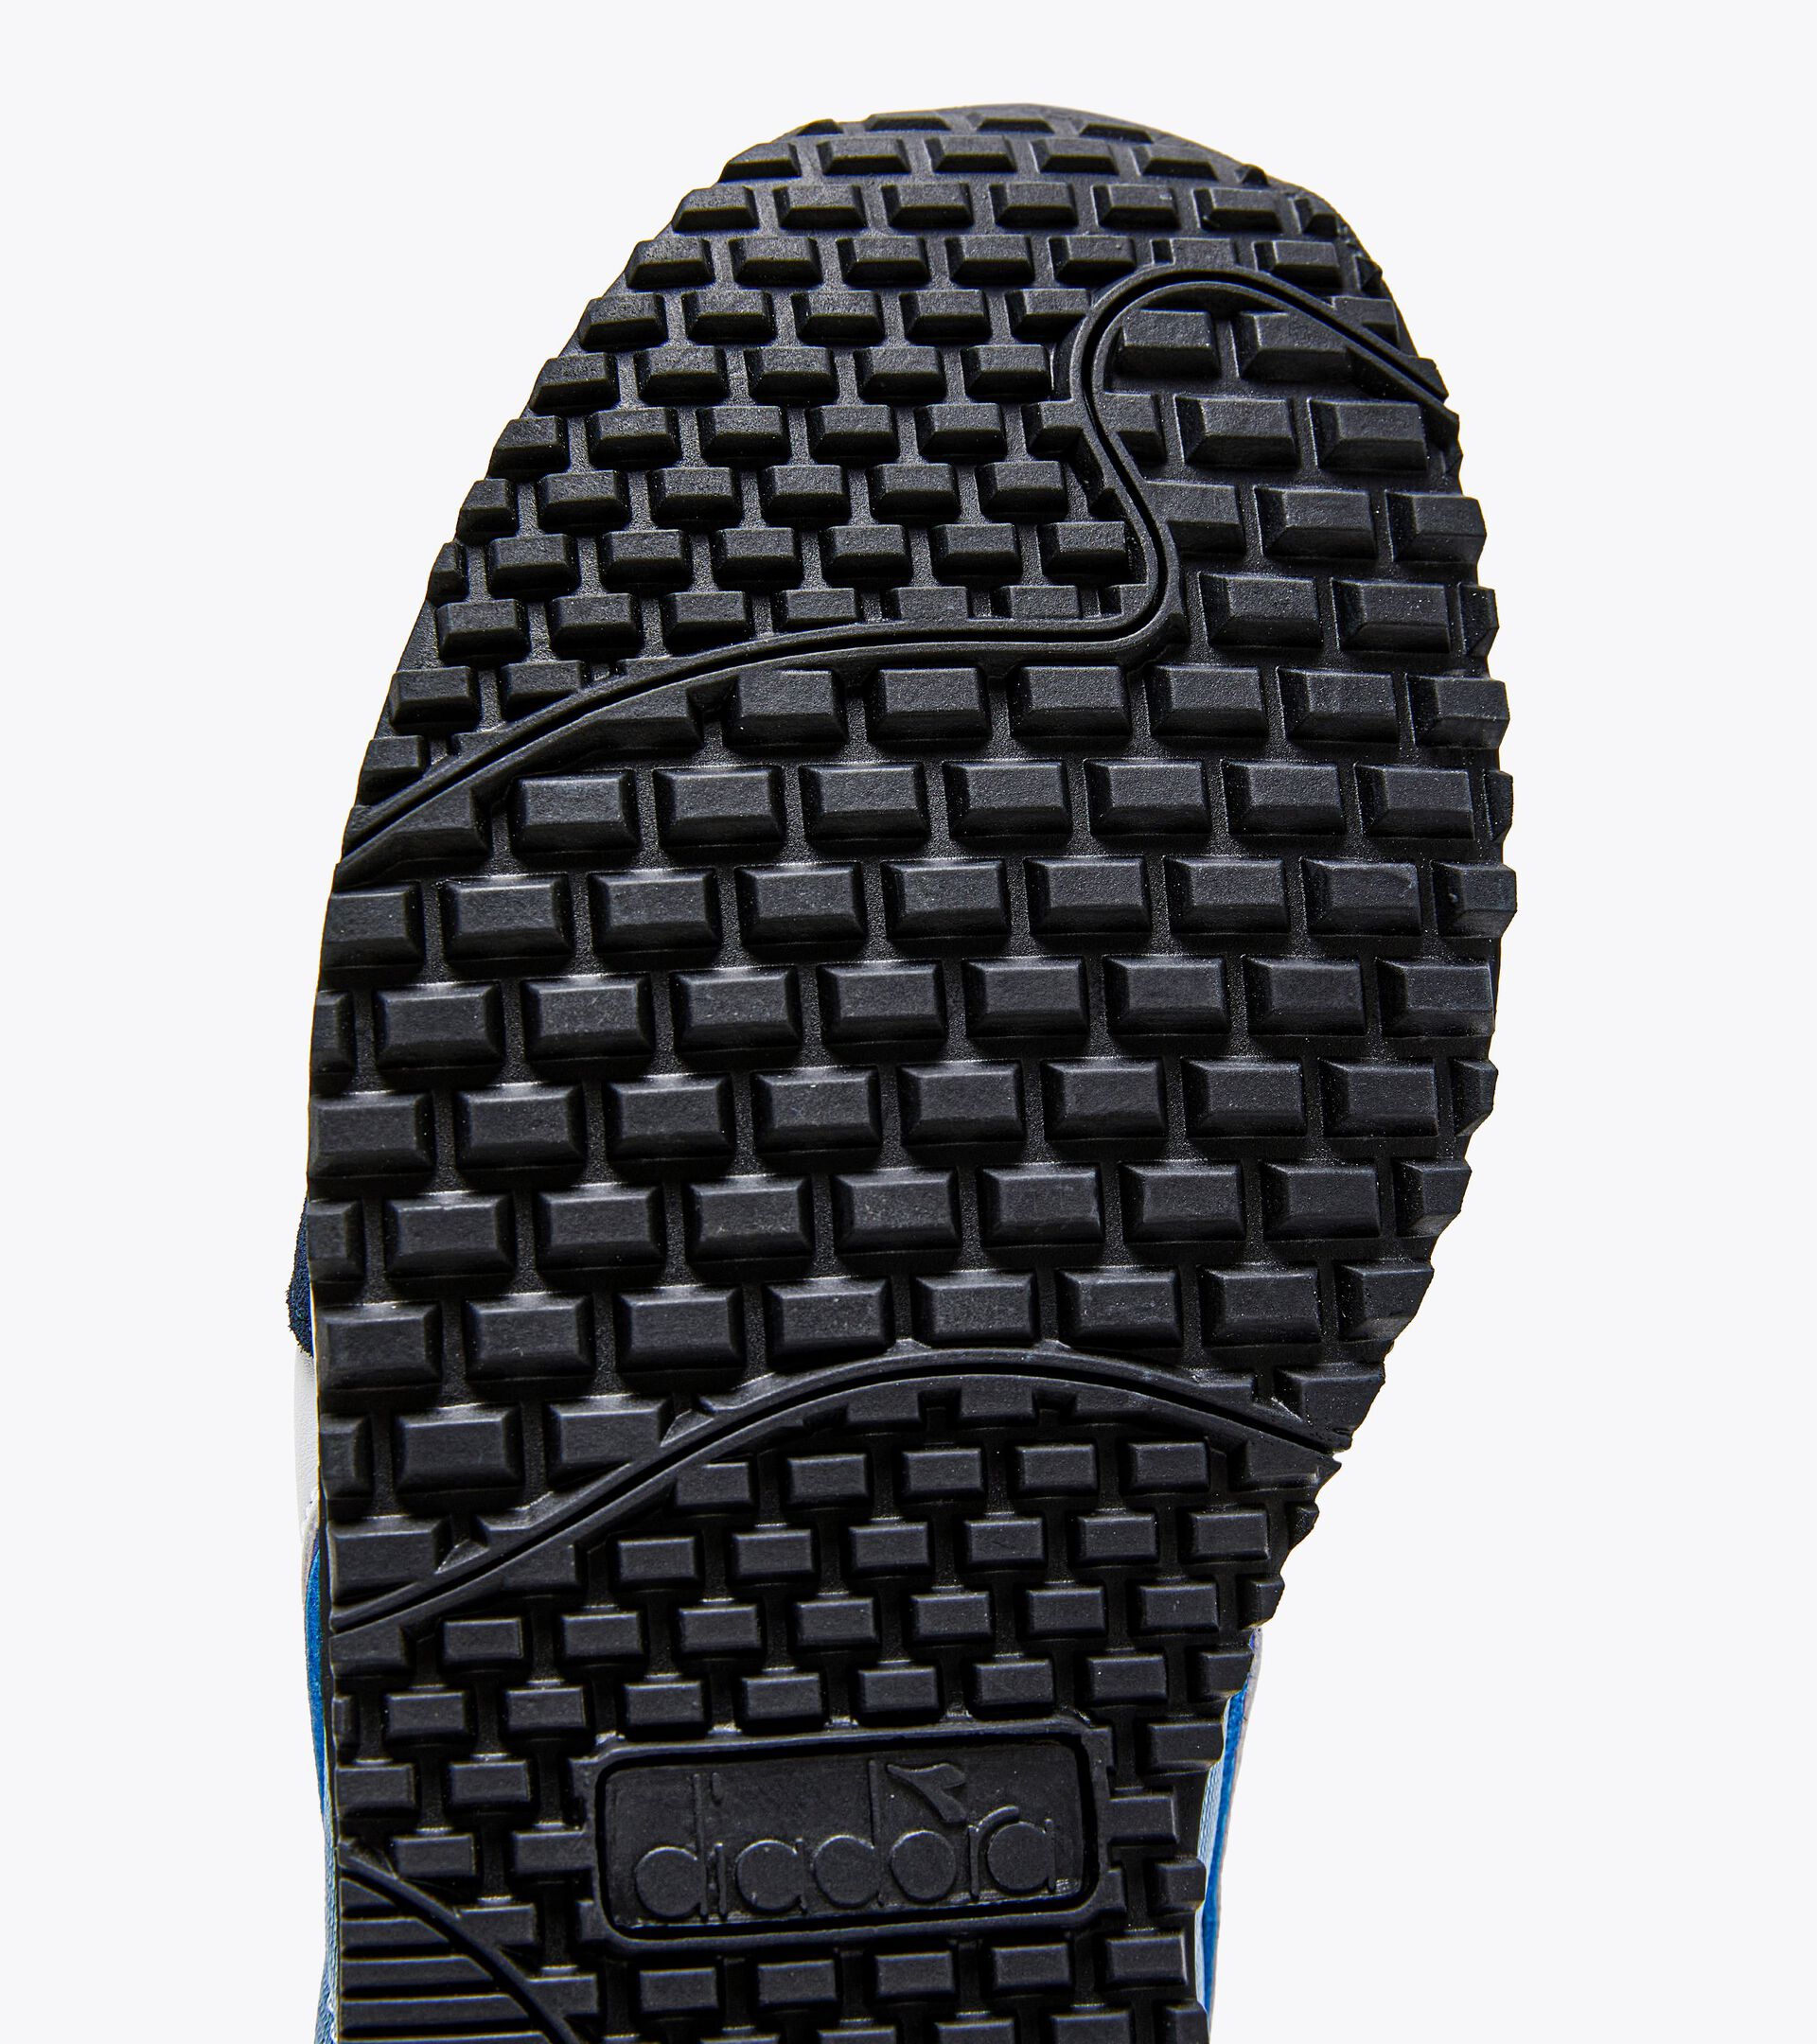 Oferta Zapatillas Diadora - Titan Hombre Gris / Creme